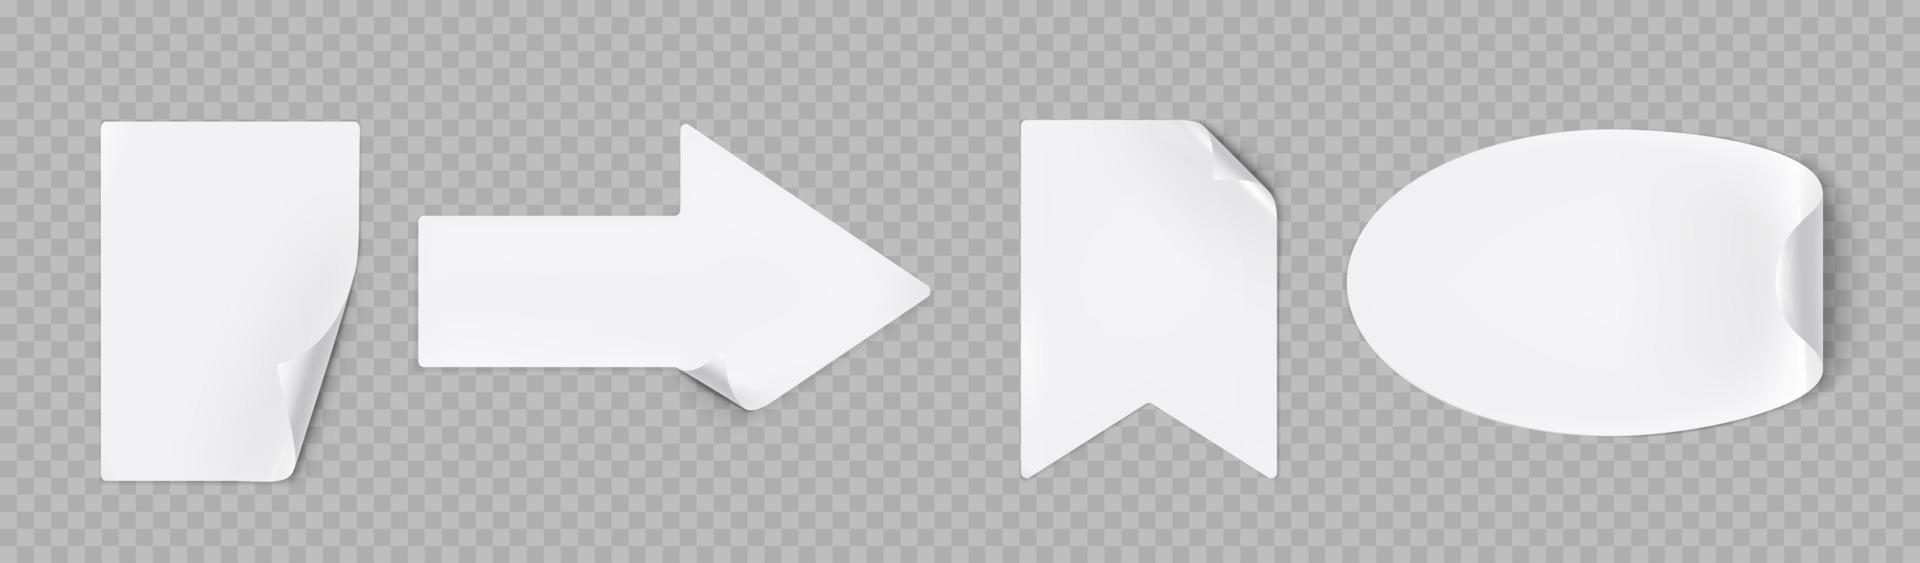 pegatinas blancas despegadas, rectangular, flecha, bandera vector